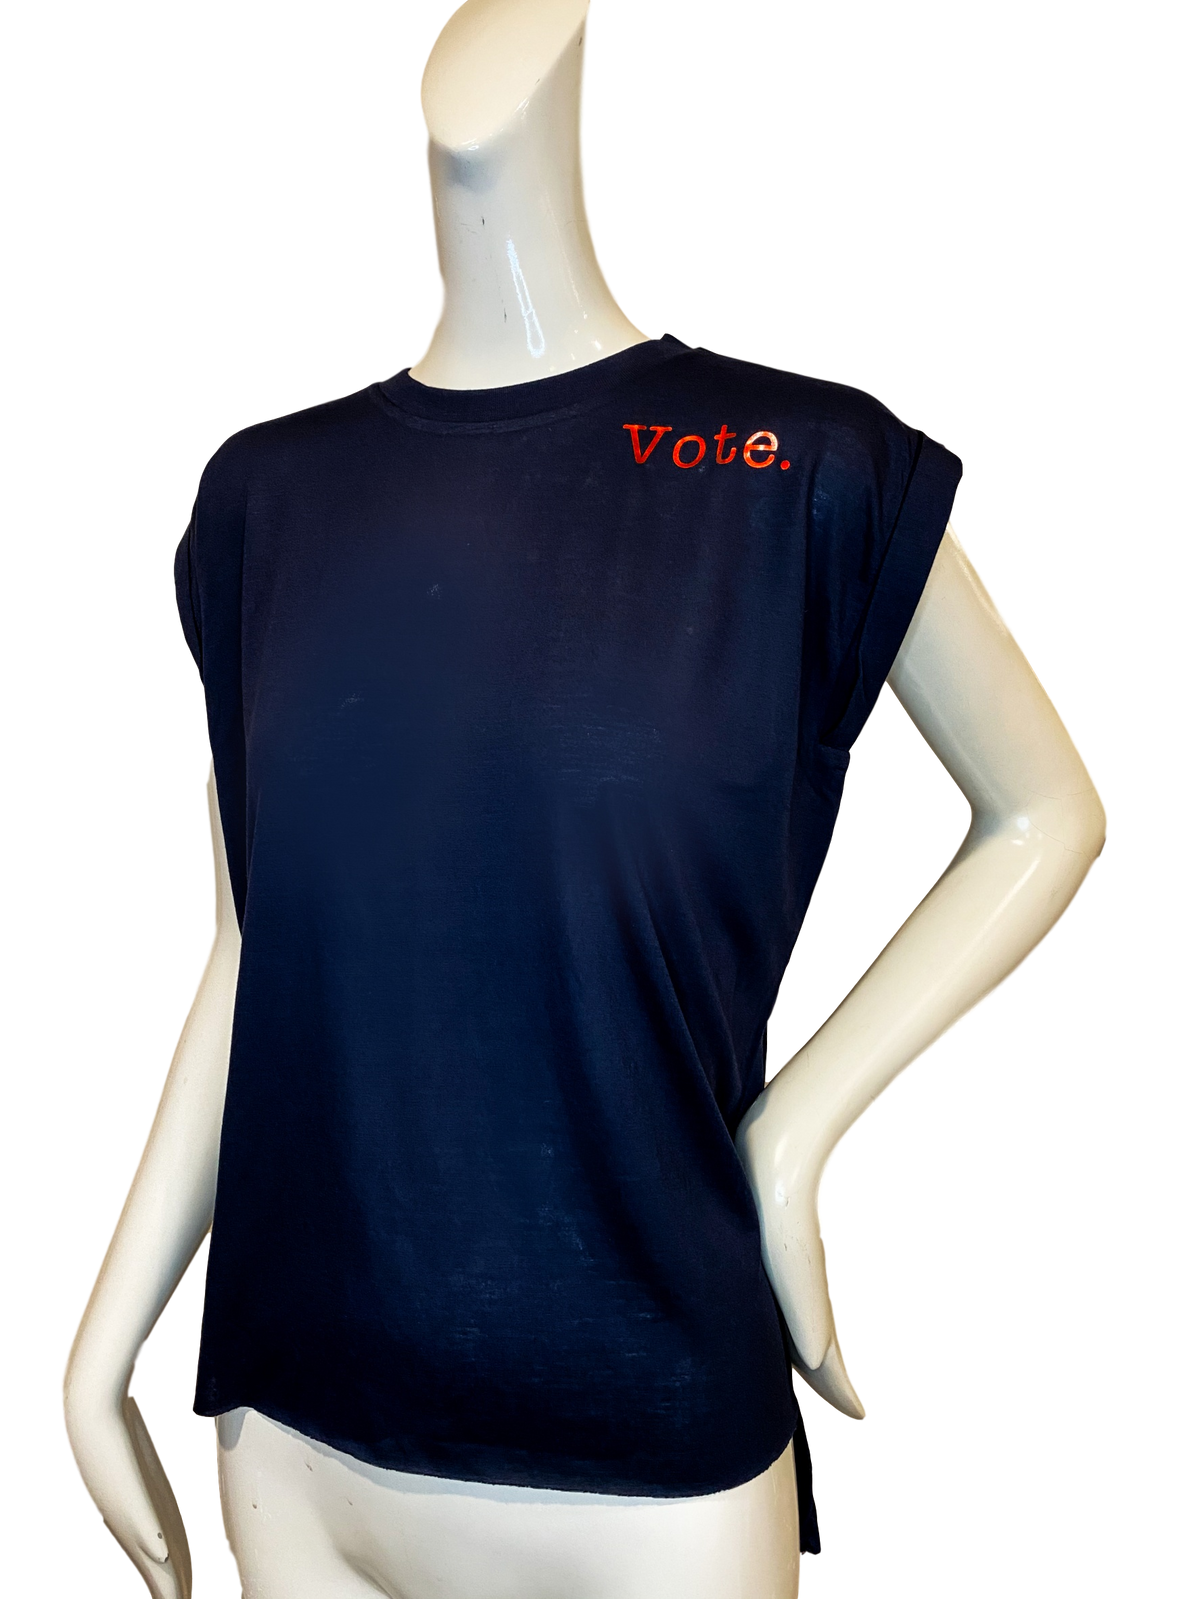 Stevie T-shirt | Vote.